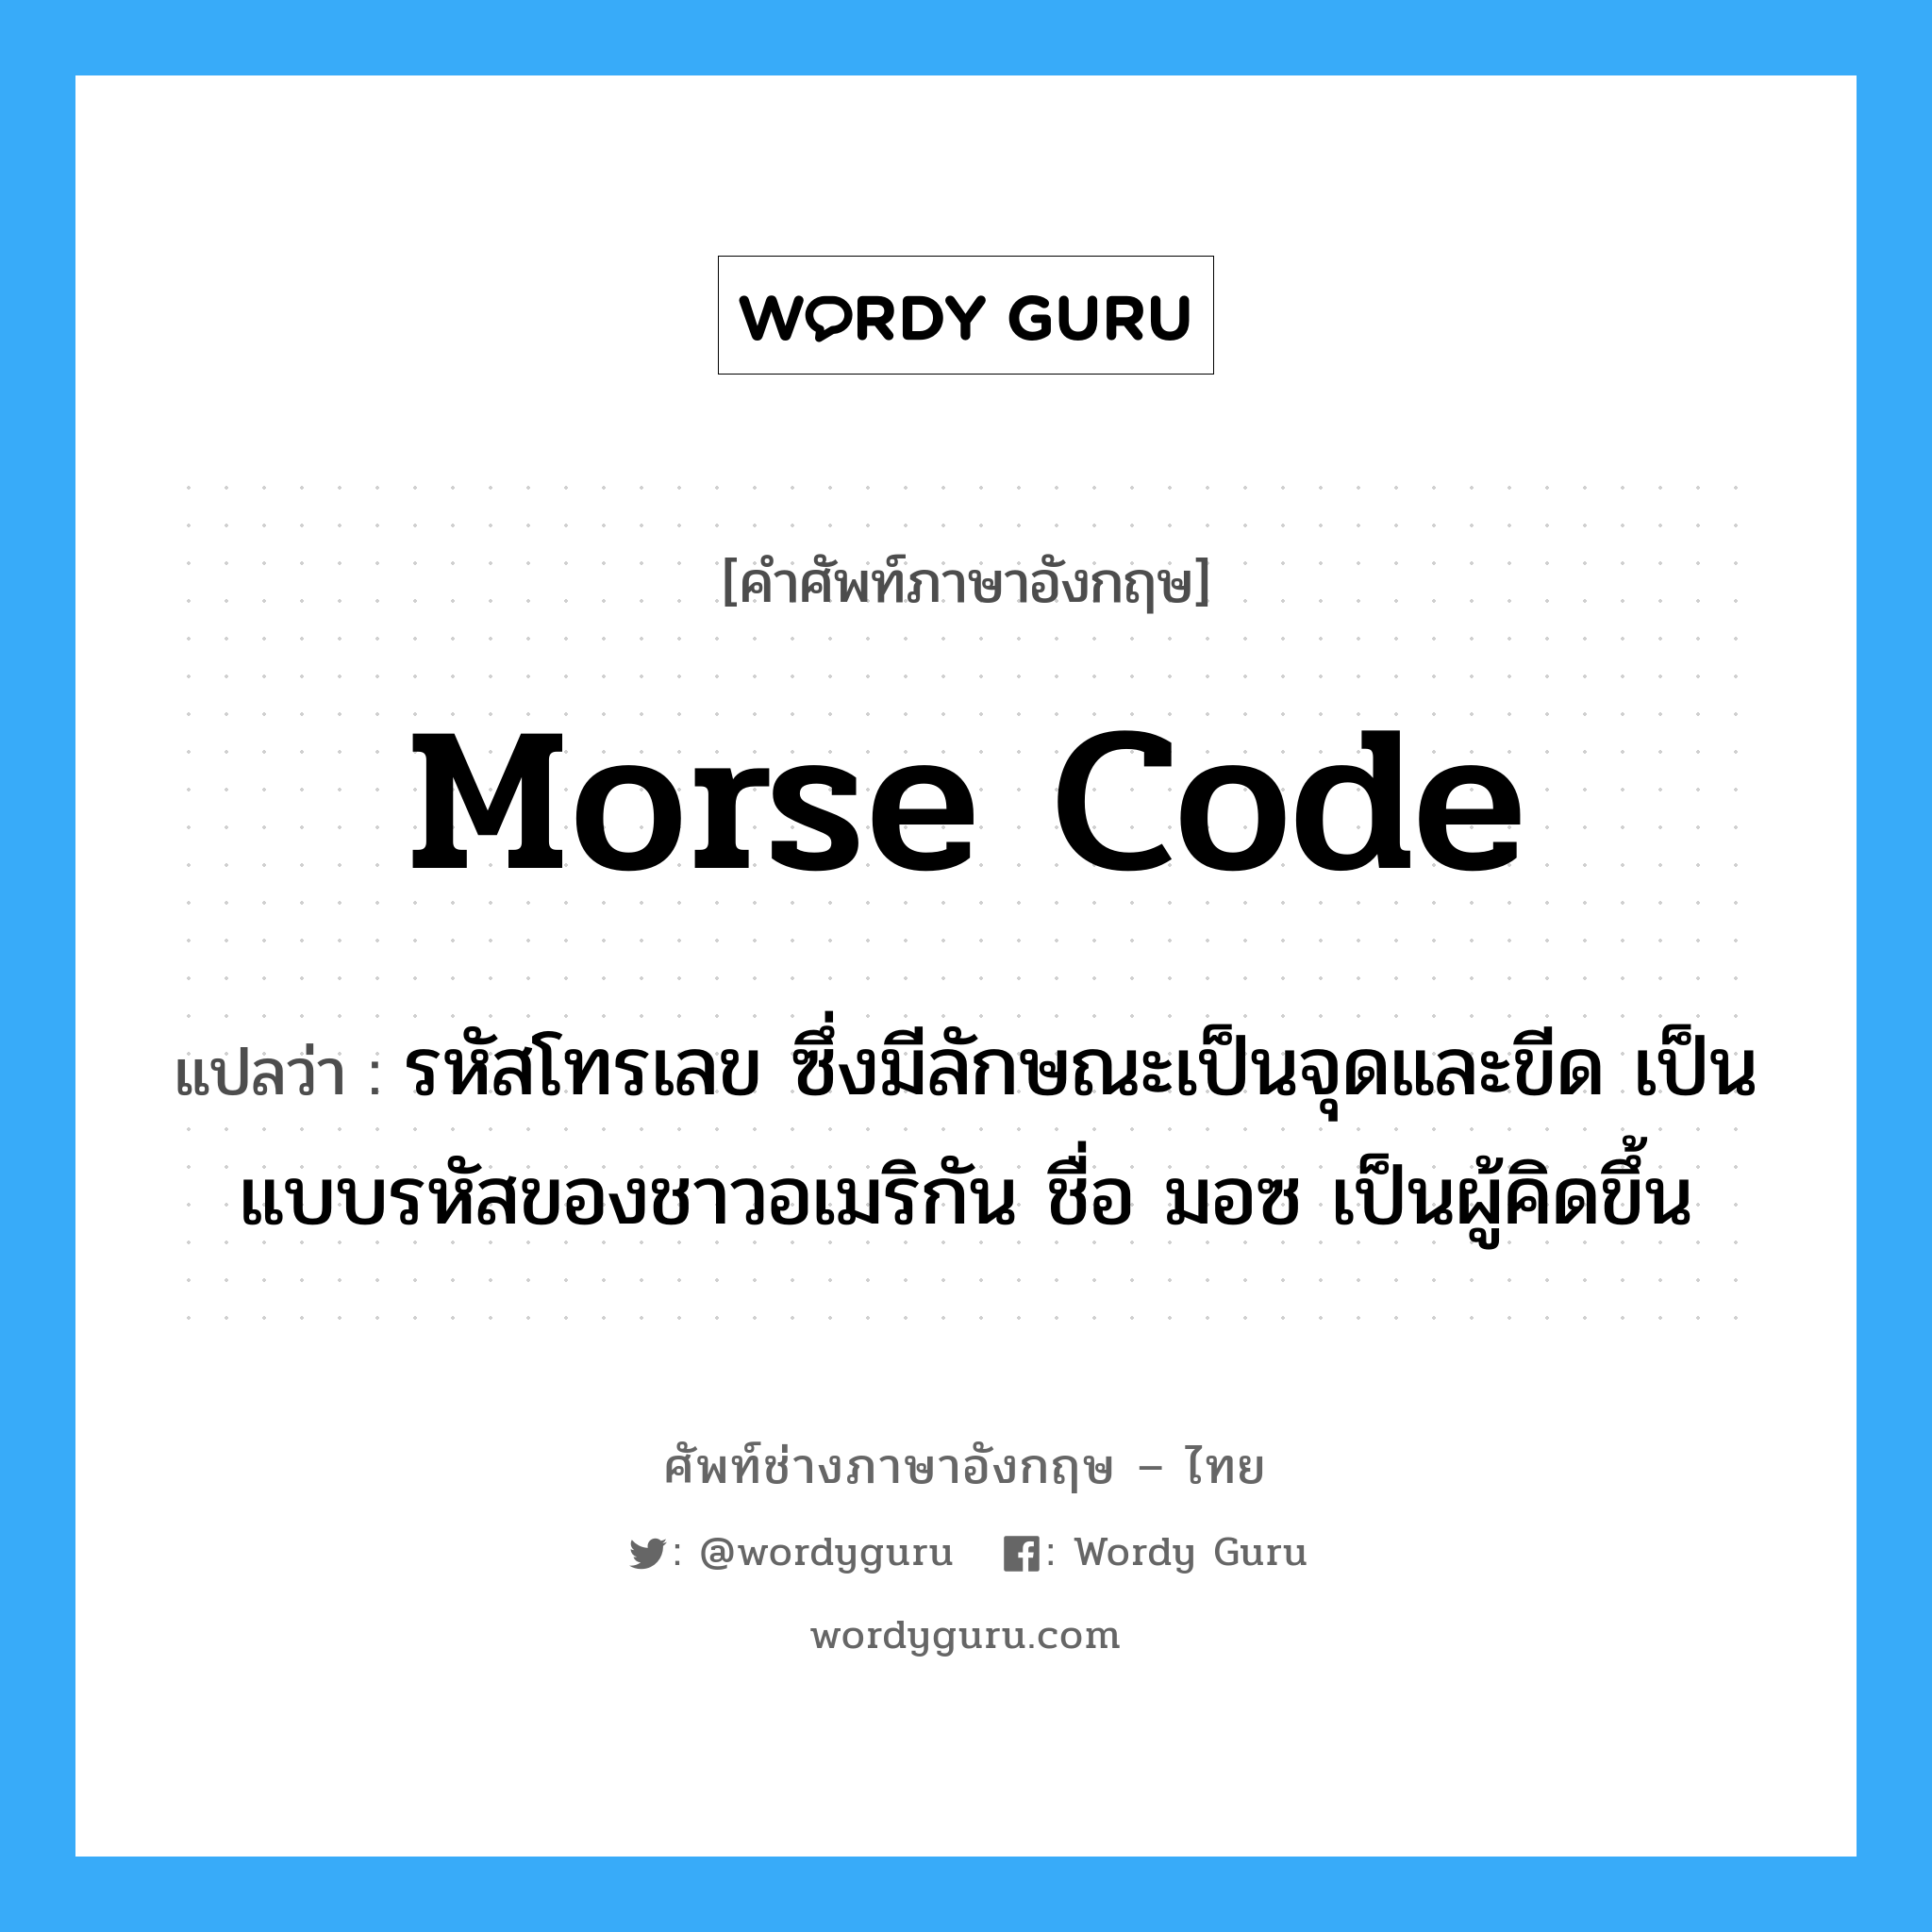 morse code แปลว่า?, คำศัพท์ช่างภาษาอังกฤษ - ไทย morse code คำศัพท์ภาษาอังกฤษ morse code แปลว่า รหัสโทรเลข ซึ่งมีลักษณะเป็นจุดและขีด เป็นแบบรหัสของชาวอเมริกัน ชื่อ มอซ เป็นผู้คิดขึ้น